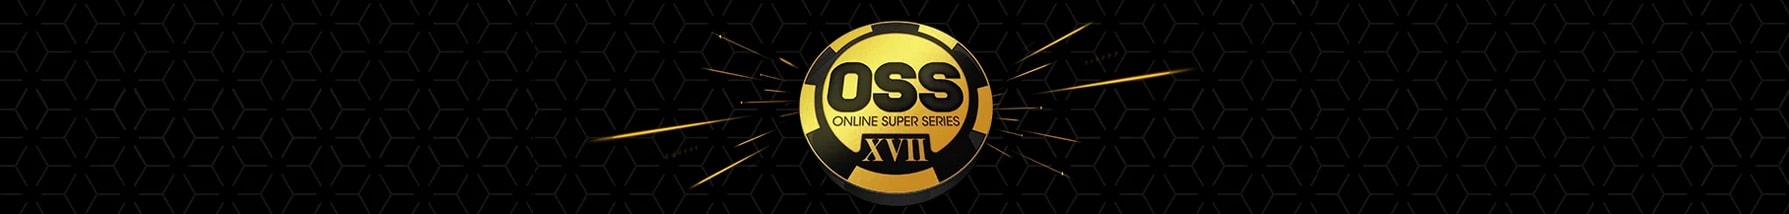 Турнирная серия OSS на PokerKing - уже скоро!